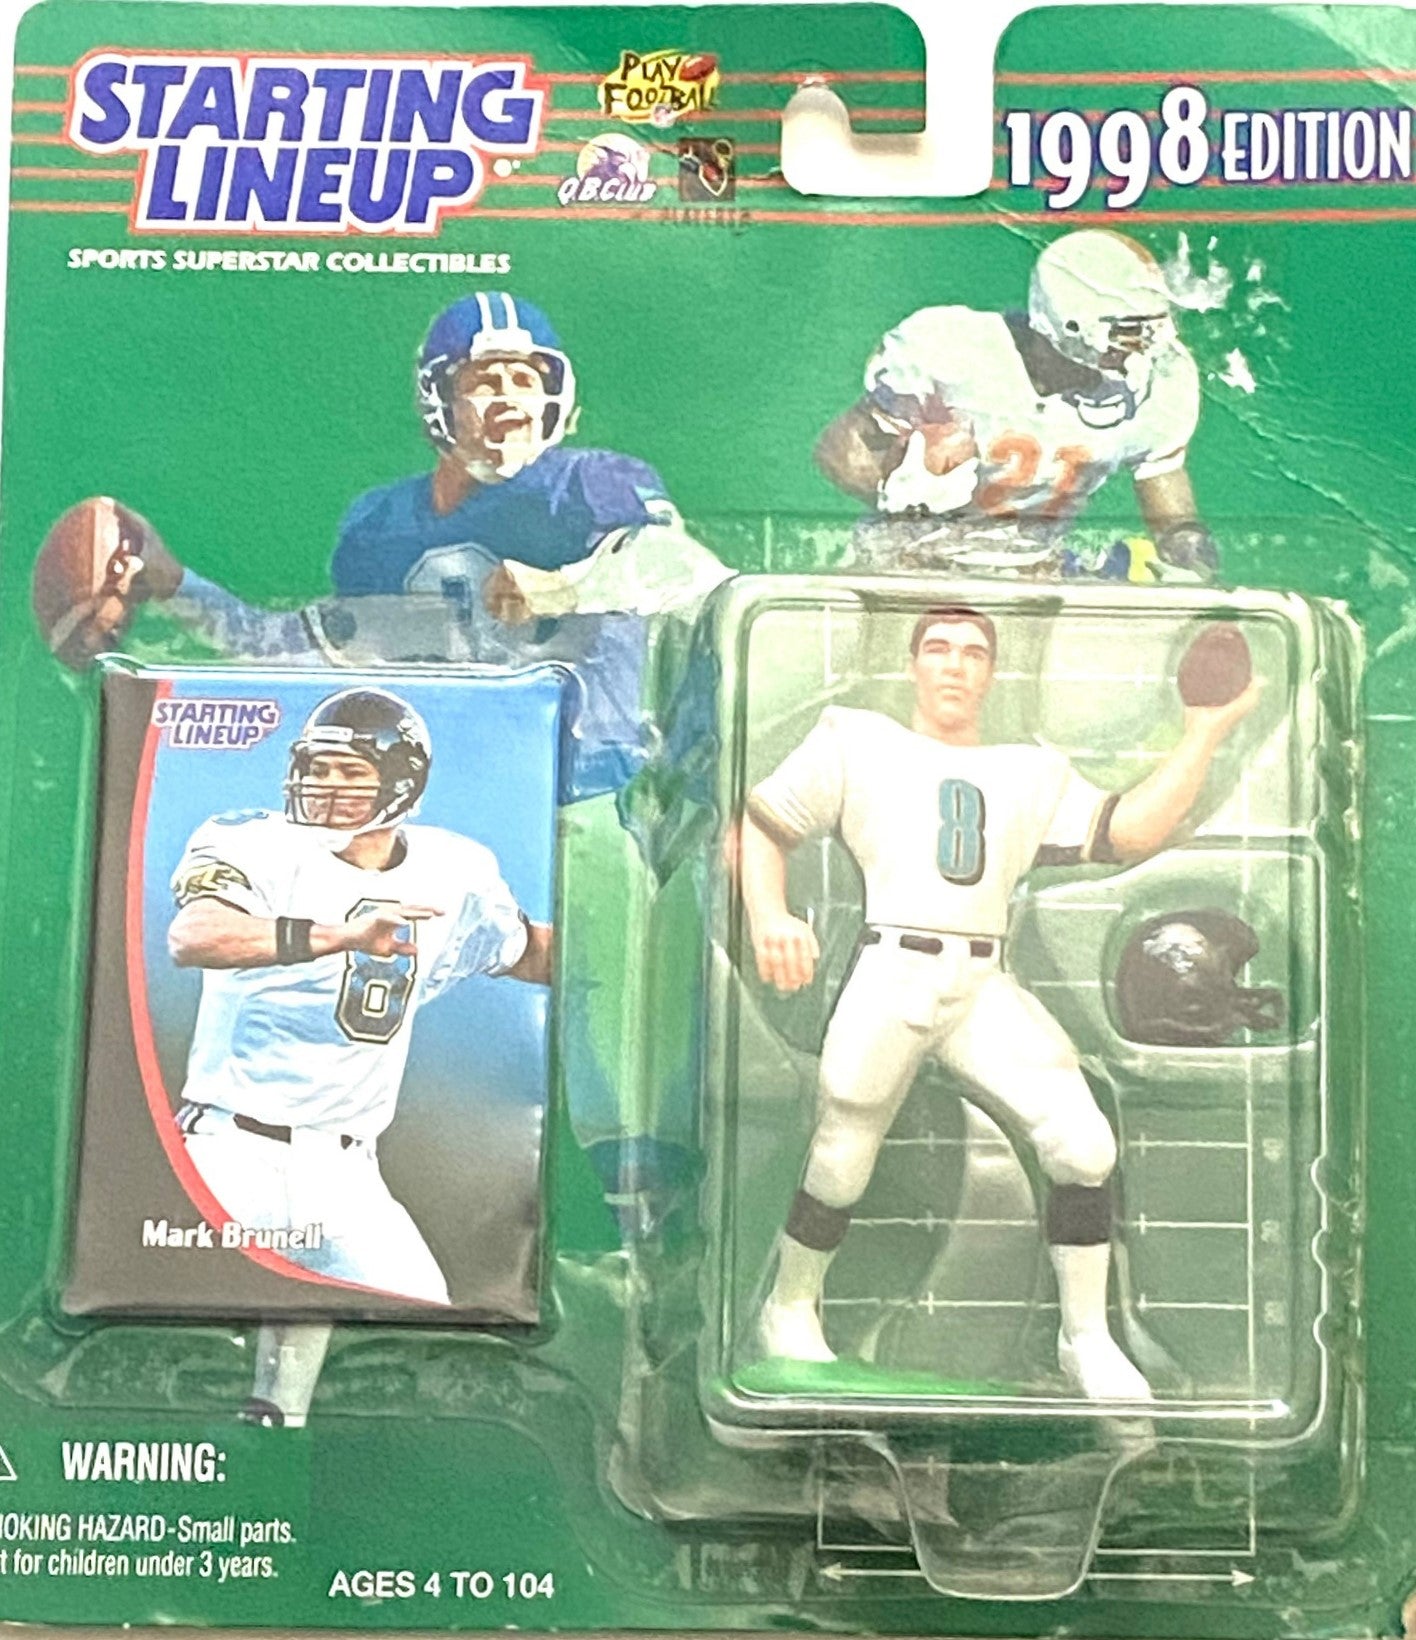 Mark Brunell 1998 NFL Jacksonville Jaguars Starting Lineup Figurine NOS by Kenner